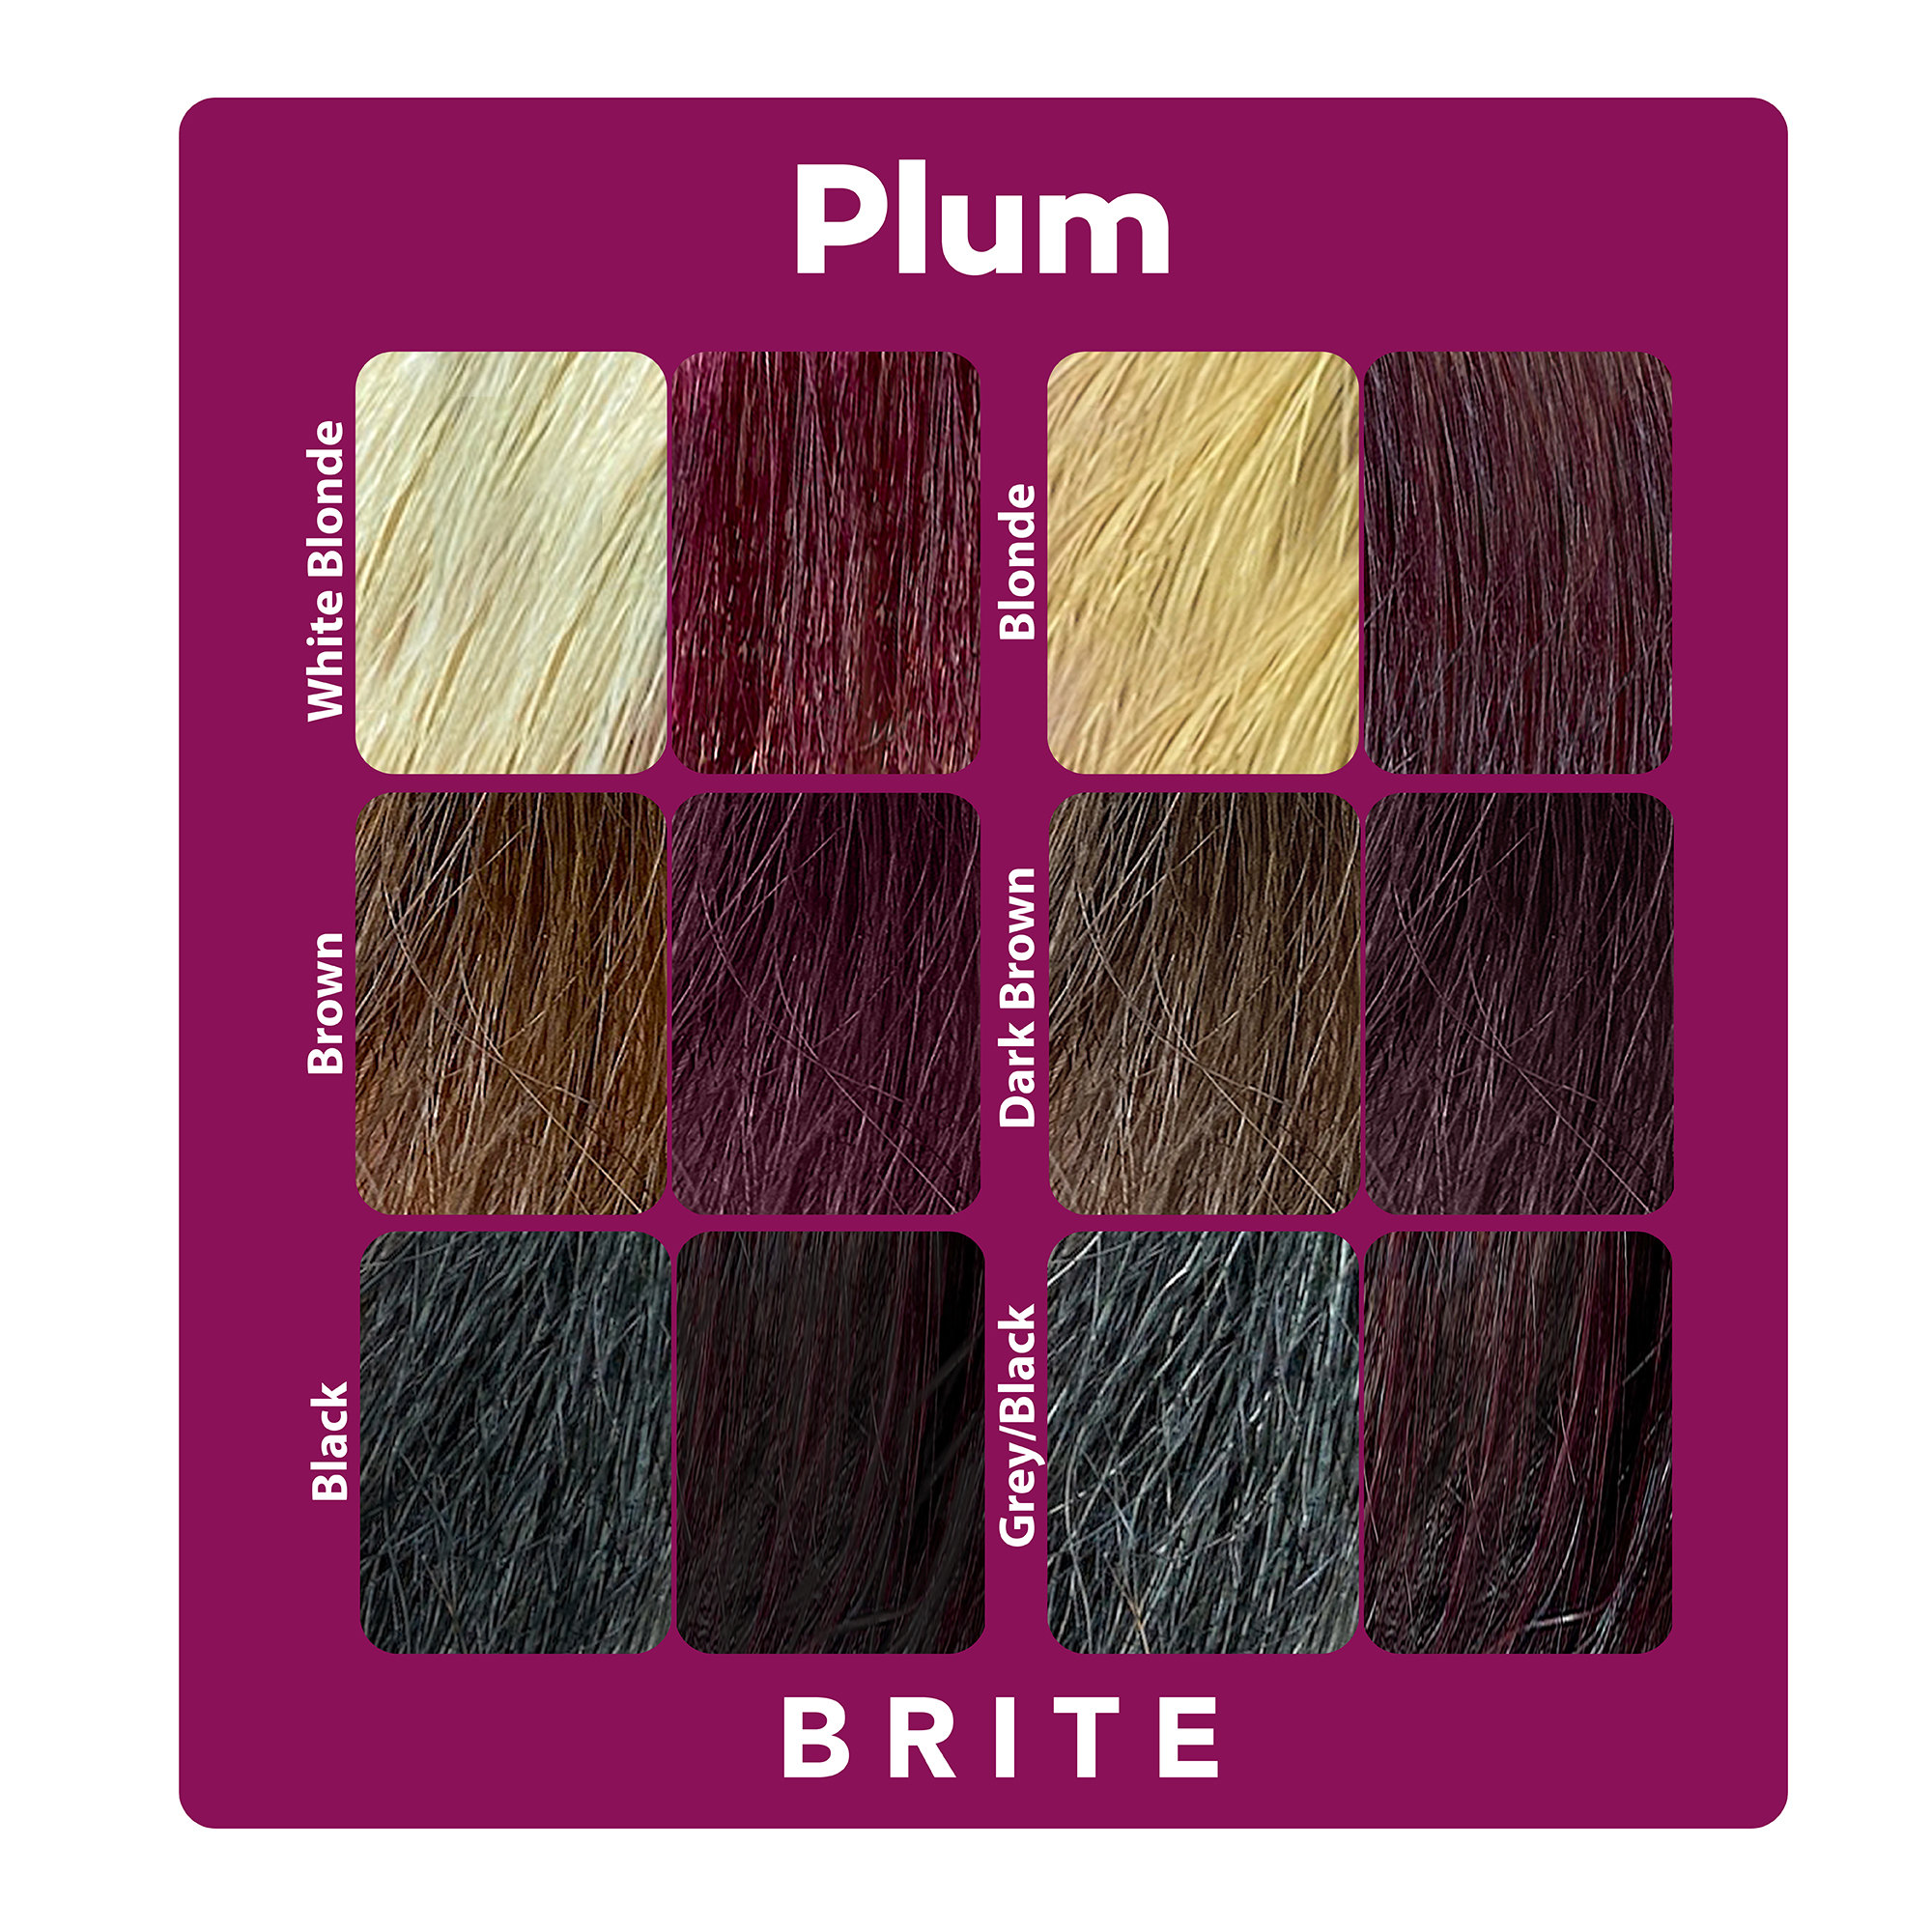 Brite plum hair color